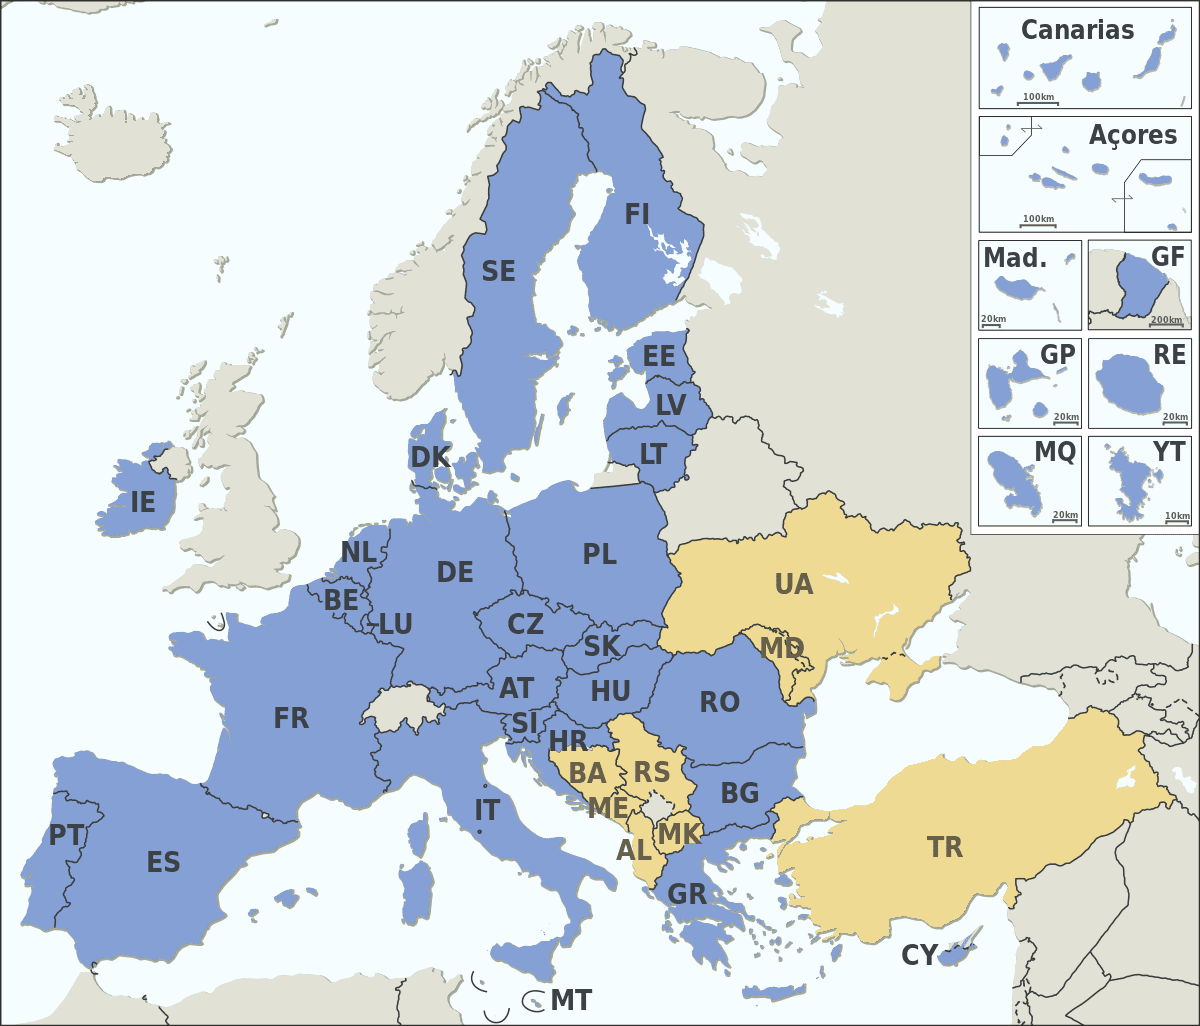 Estados-Membros da União Europeia e Estados candidatos.